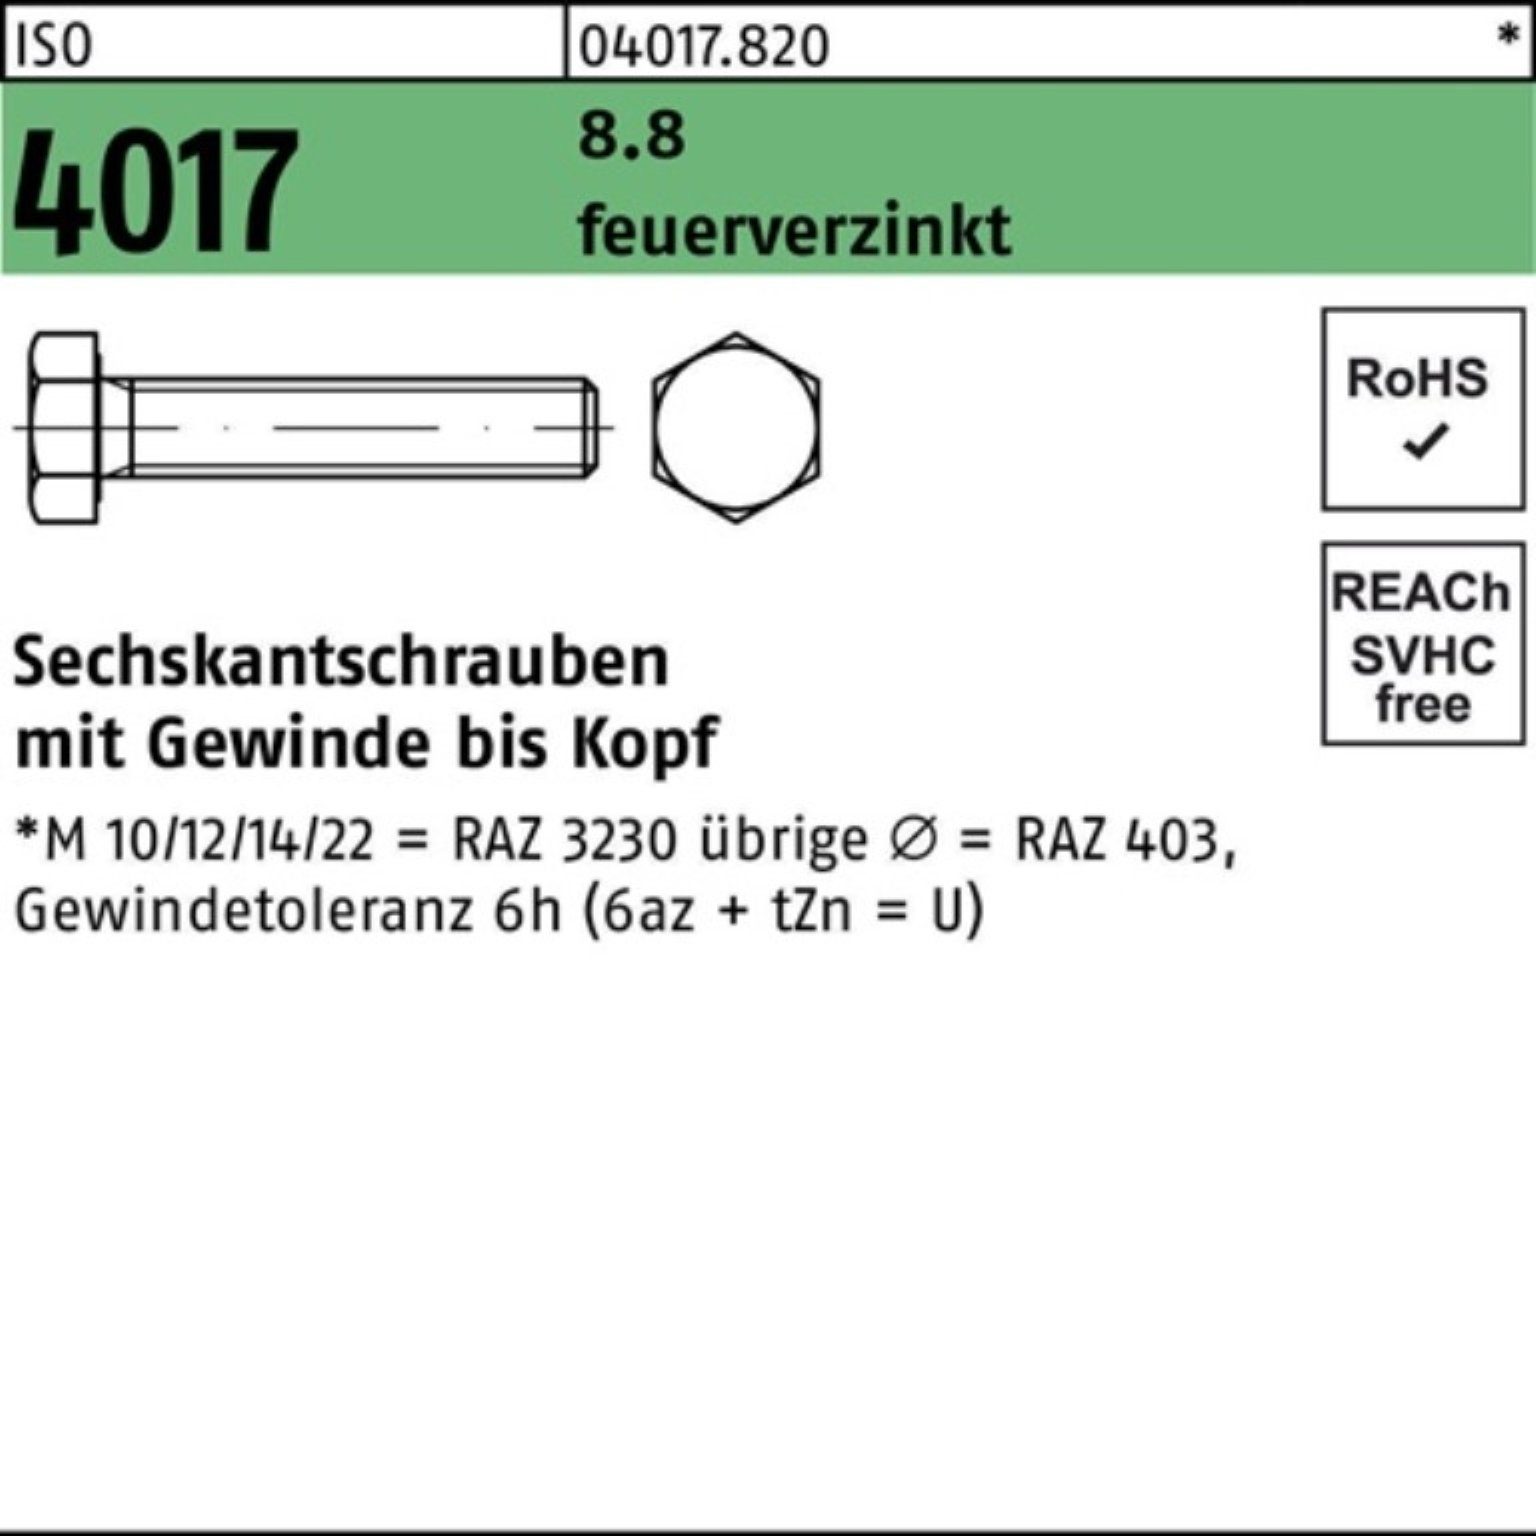 Sechskantschraube 8.8 St 100er VG Pack 4017 ISO M20x 1 160 Bufab Sechskantschraube feuerverz.